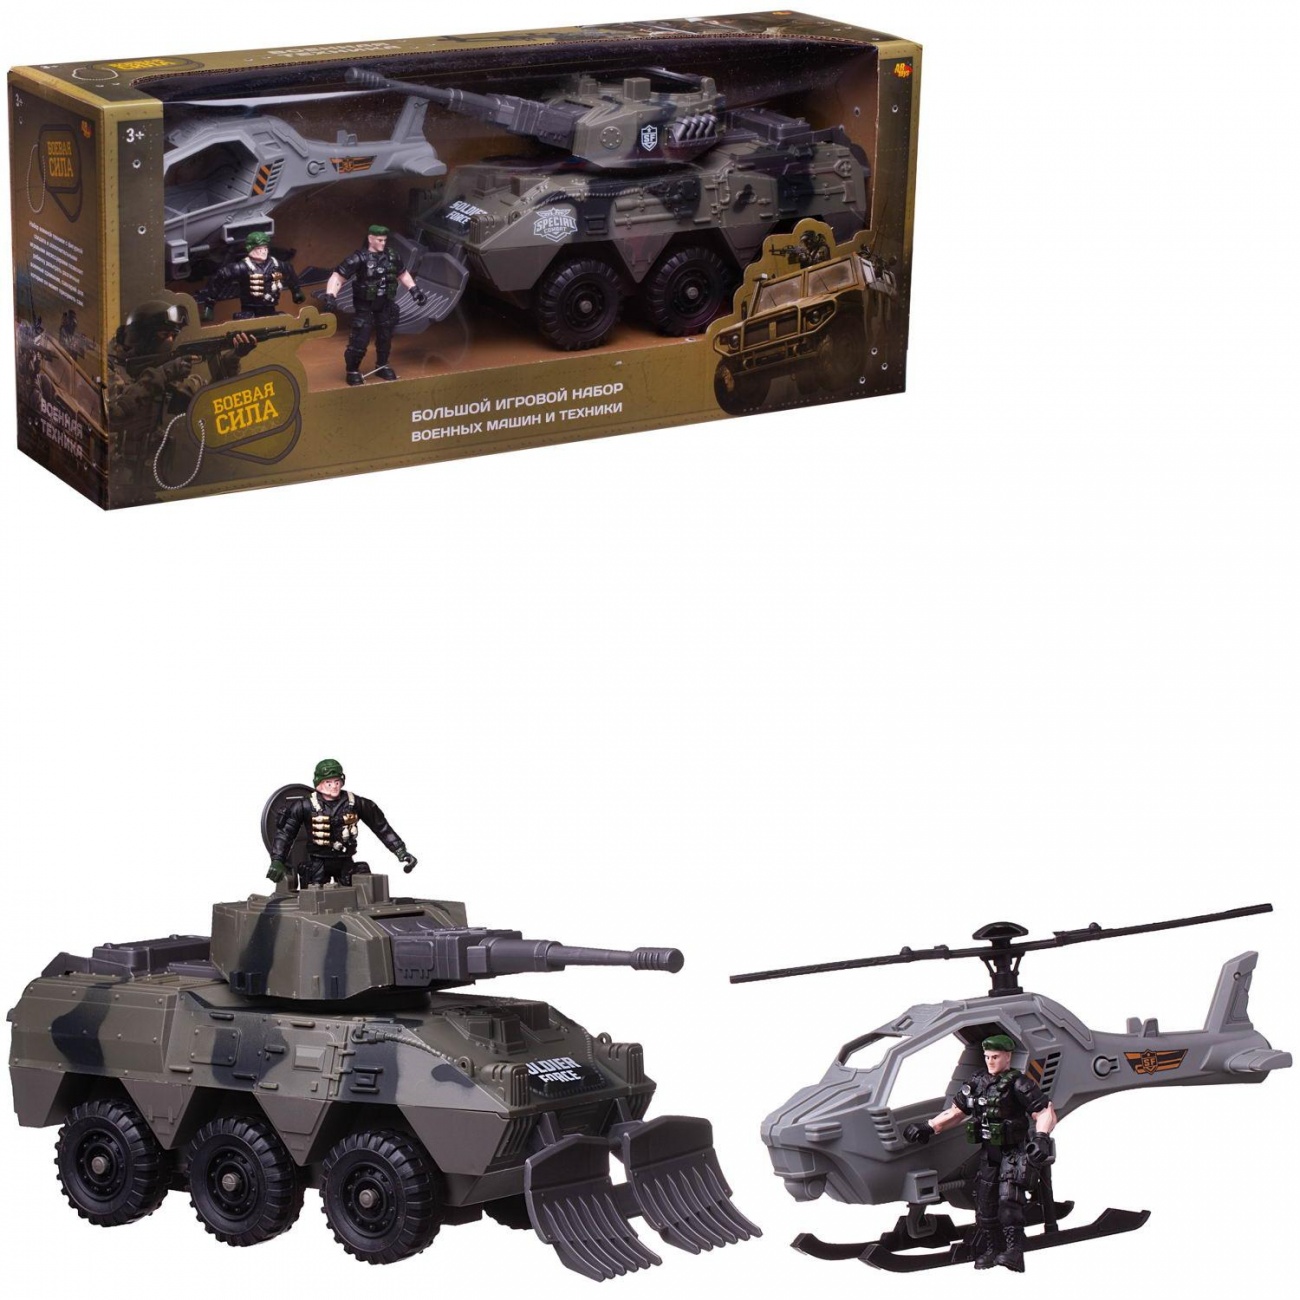 Игровой набор Abtoys Боевая сила: танк, вертолет, 2 фигурки солдат PT-01669